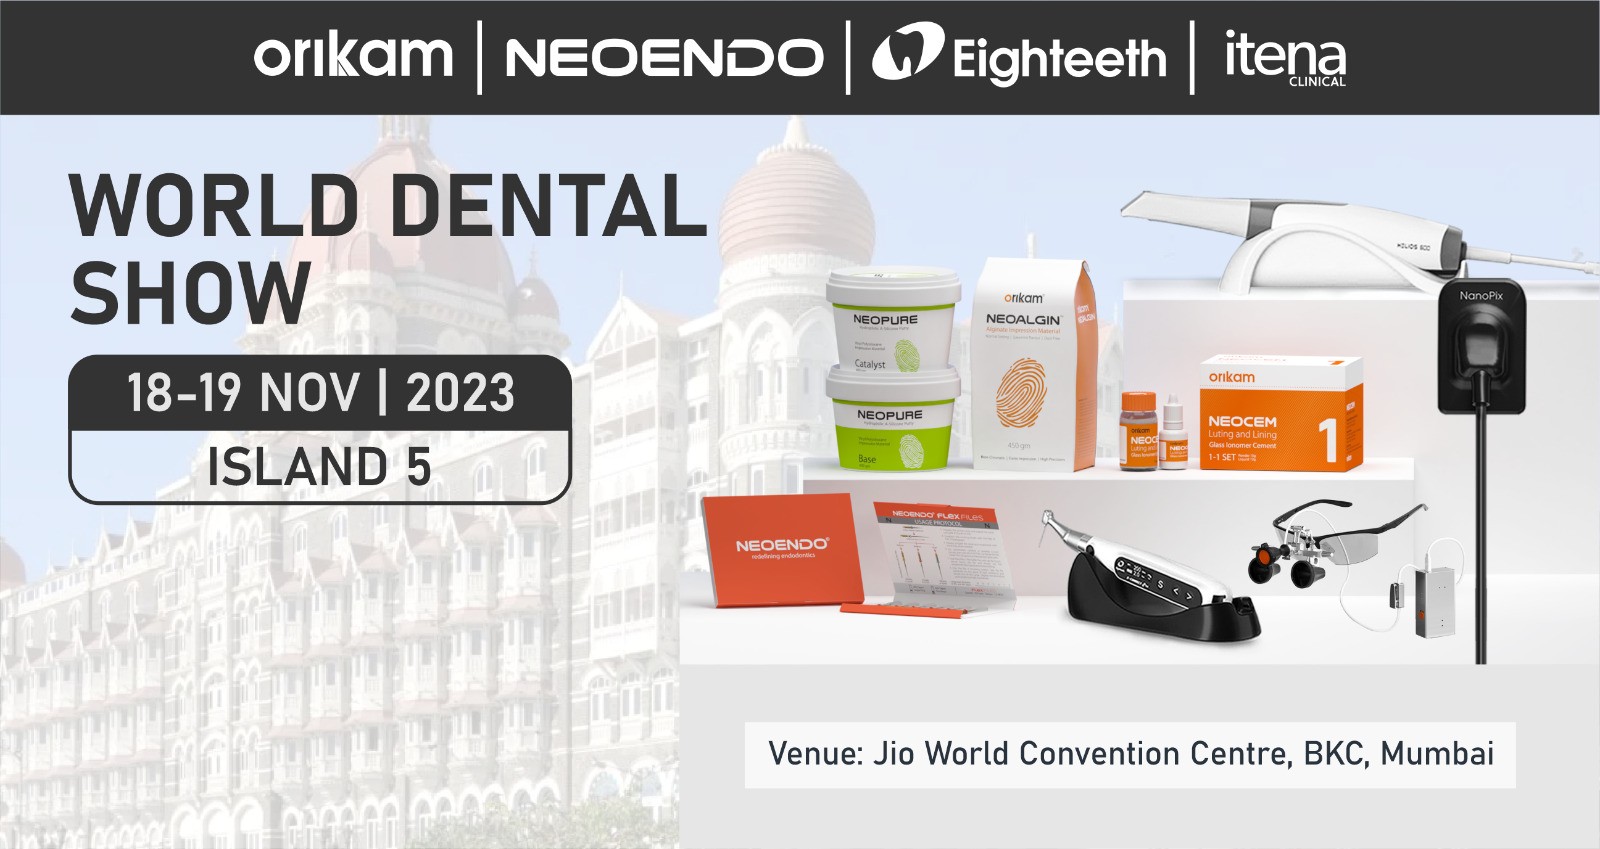 “World Dental Show” in Mumbai.